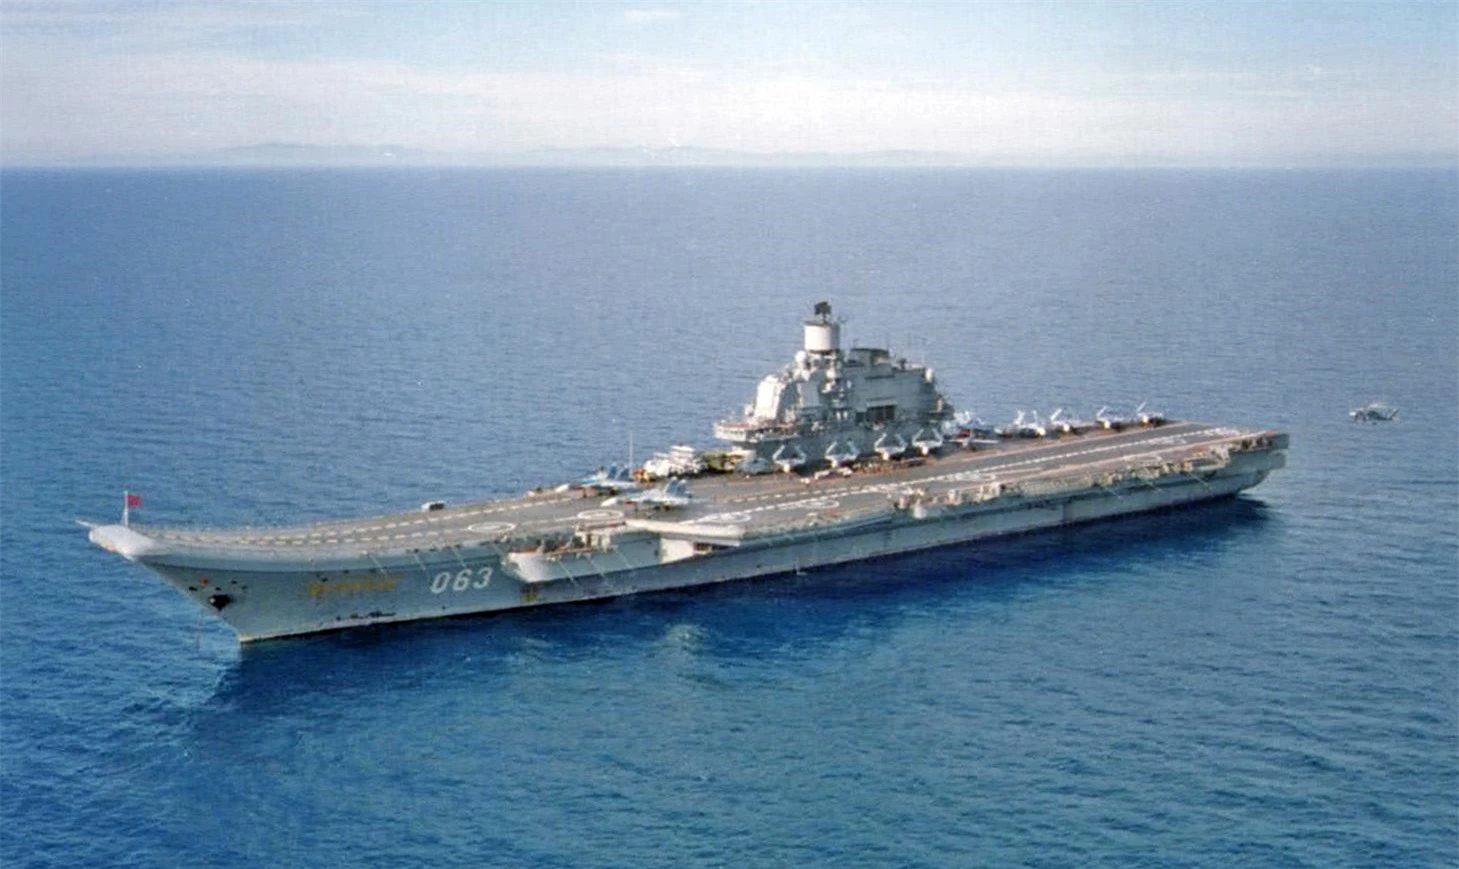 Kể từ khi được đưa vào sử dụng, tàu Đô đốc Kuznetsov gặp nhiều vấn đề. Nhà máy đóng tàu Biển Đen của Liên Xô đã phát triển chiến hạm này để chống lại hàng không mẫu hạm Mỹ trong thời kỳ đỉnh điểm của Chiến tranh Lạnh.